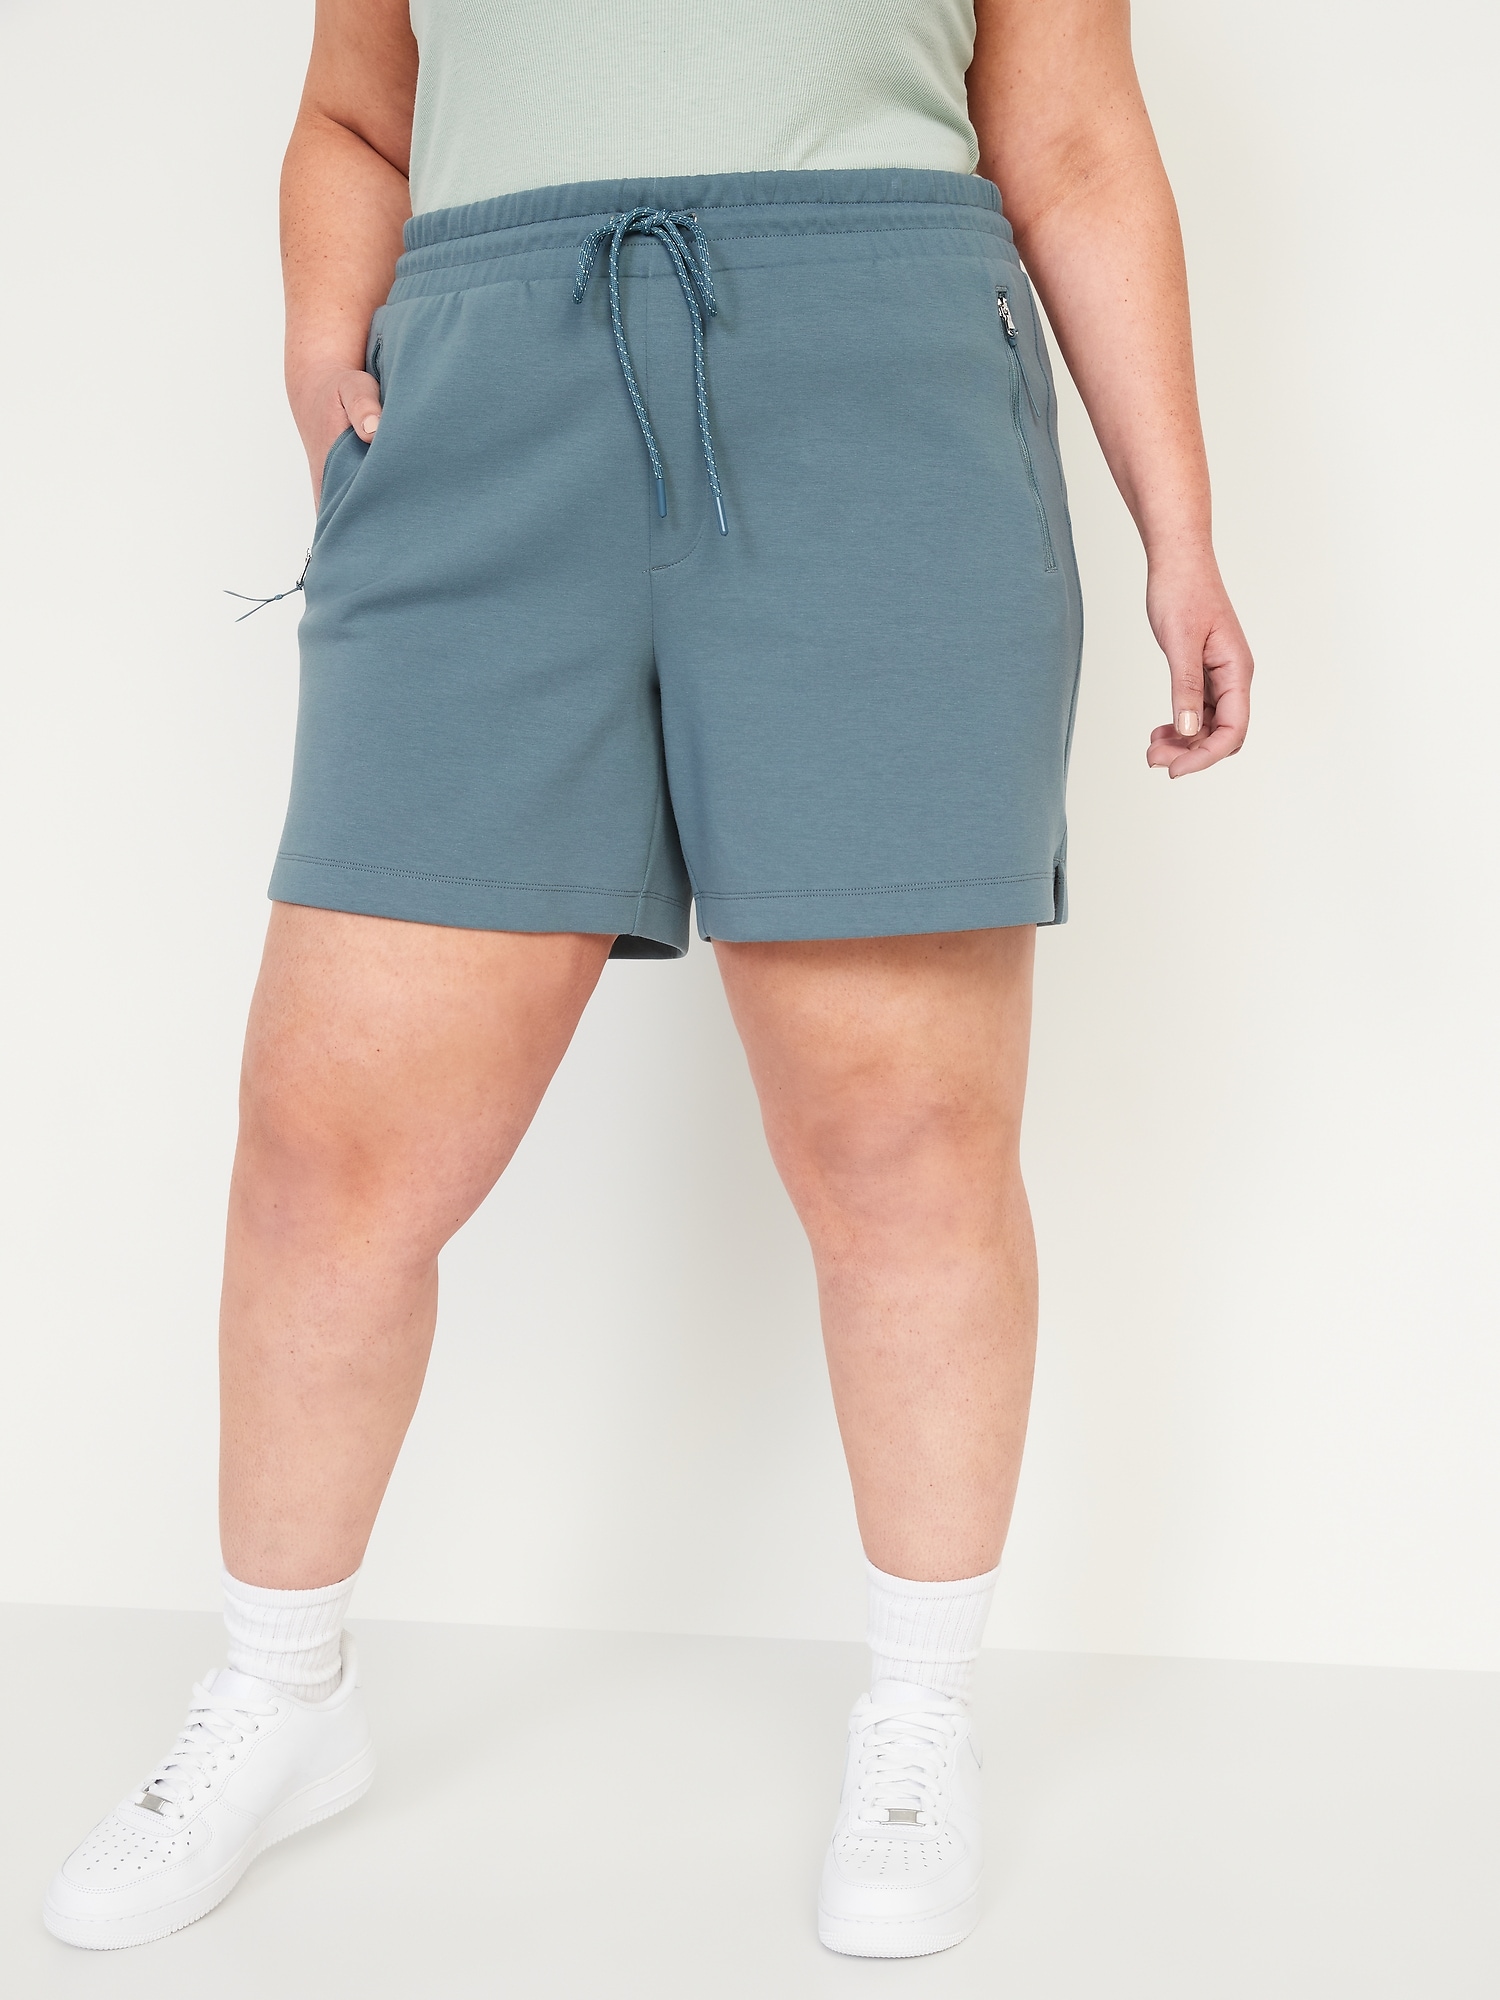 Women's 6 Inch Inseam Shorts